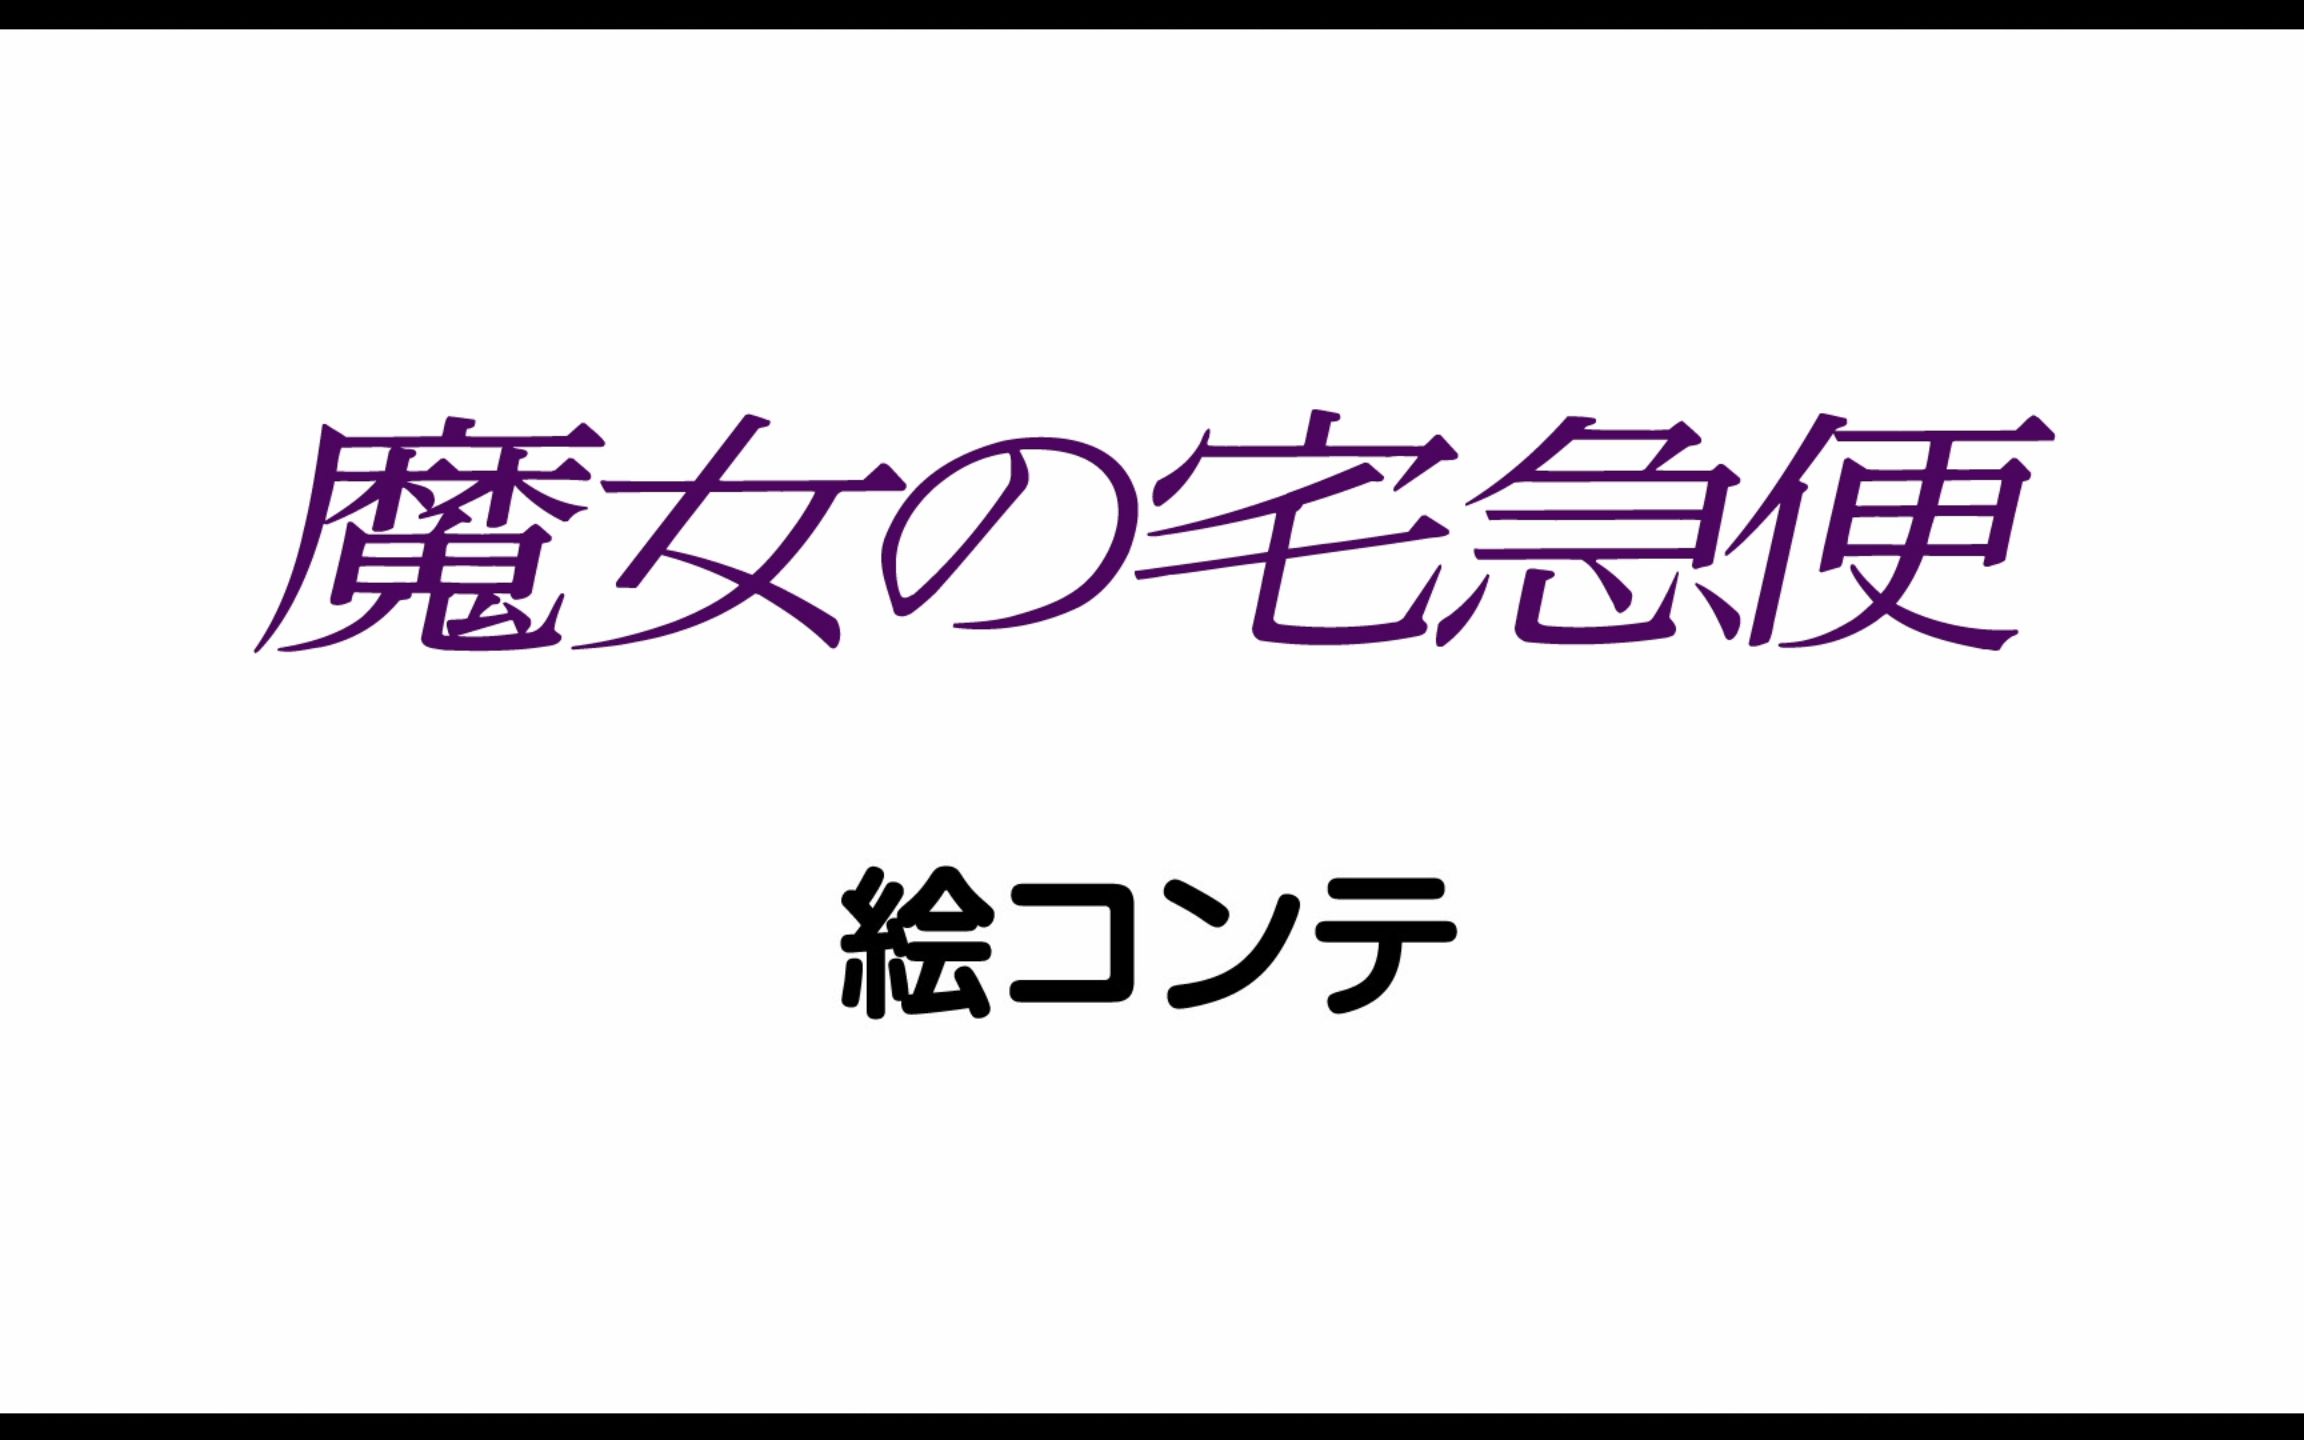 【HD1080】宫崎骏 吉卜力工作室 1989年 魔女宅急便 分镜动画 中日双语字幕